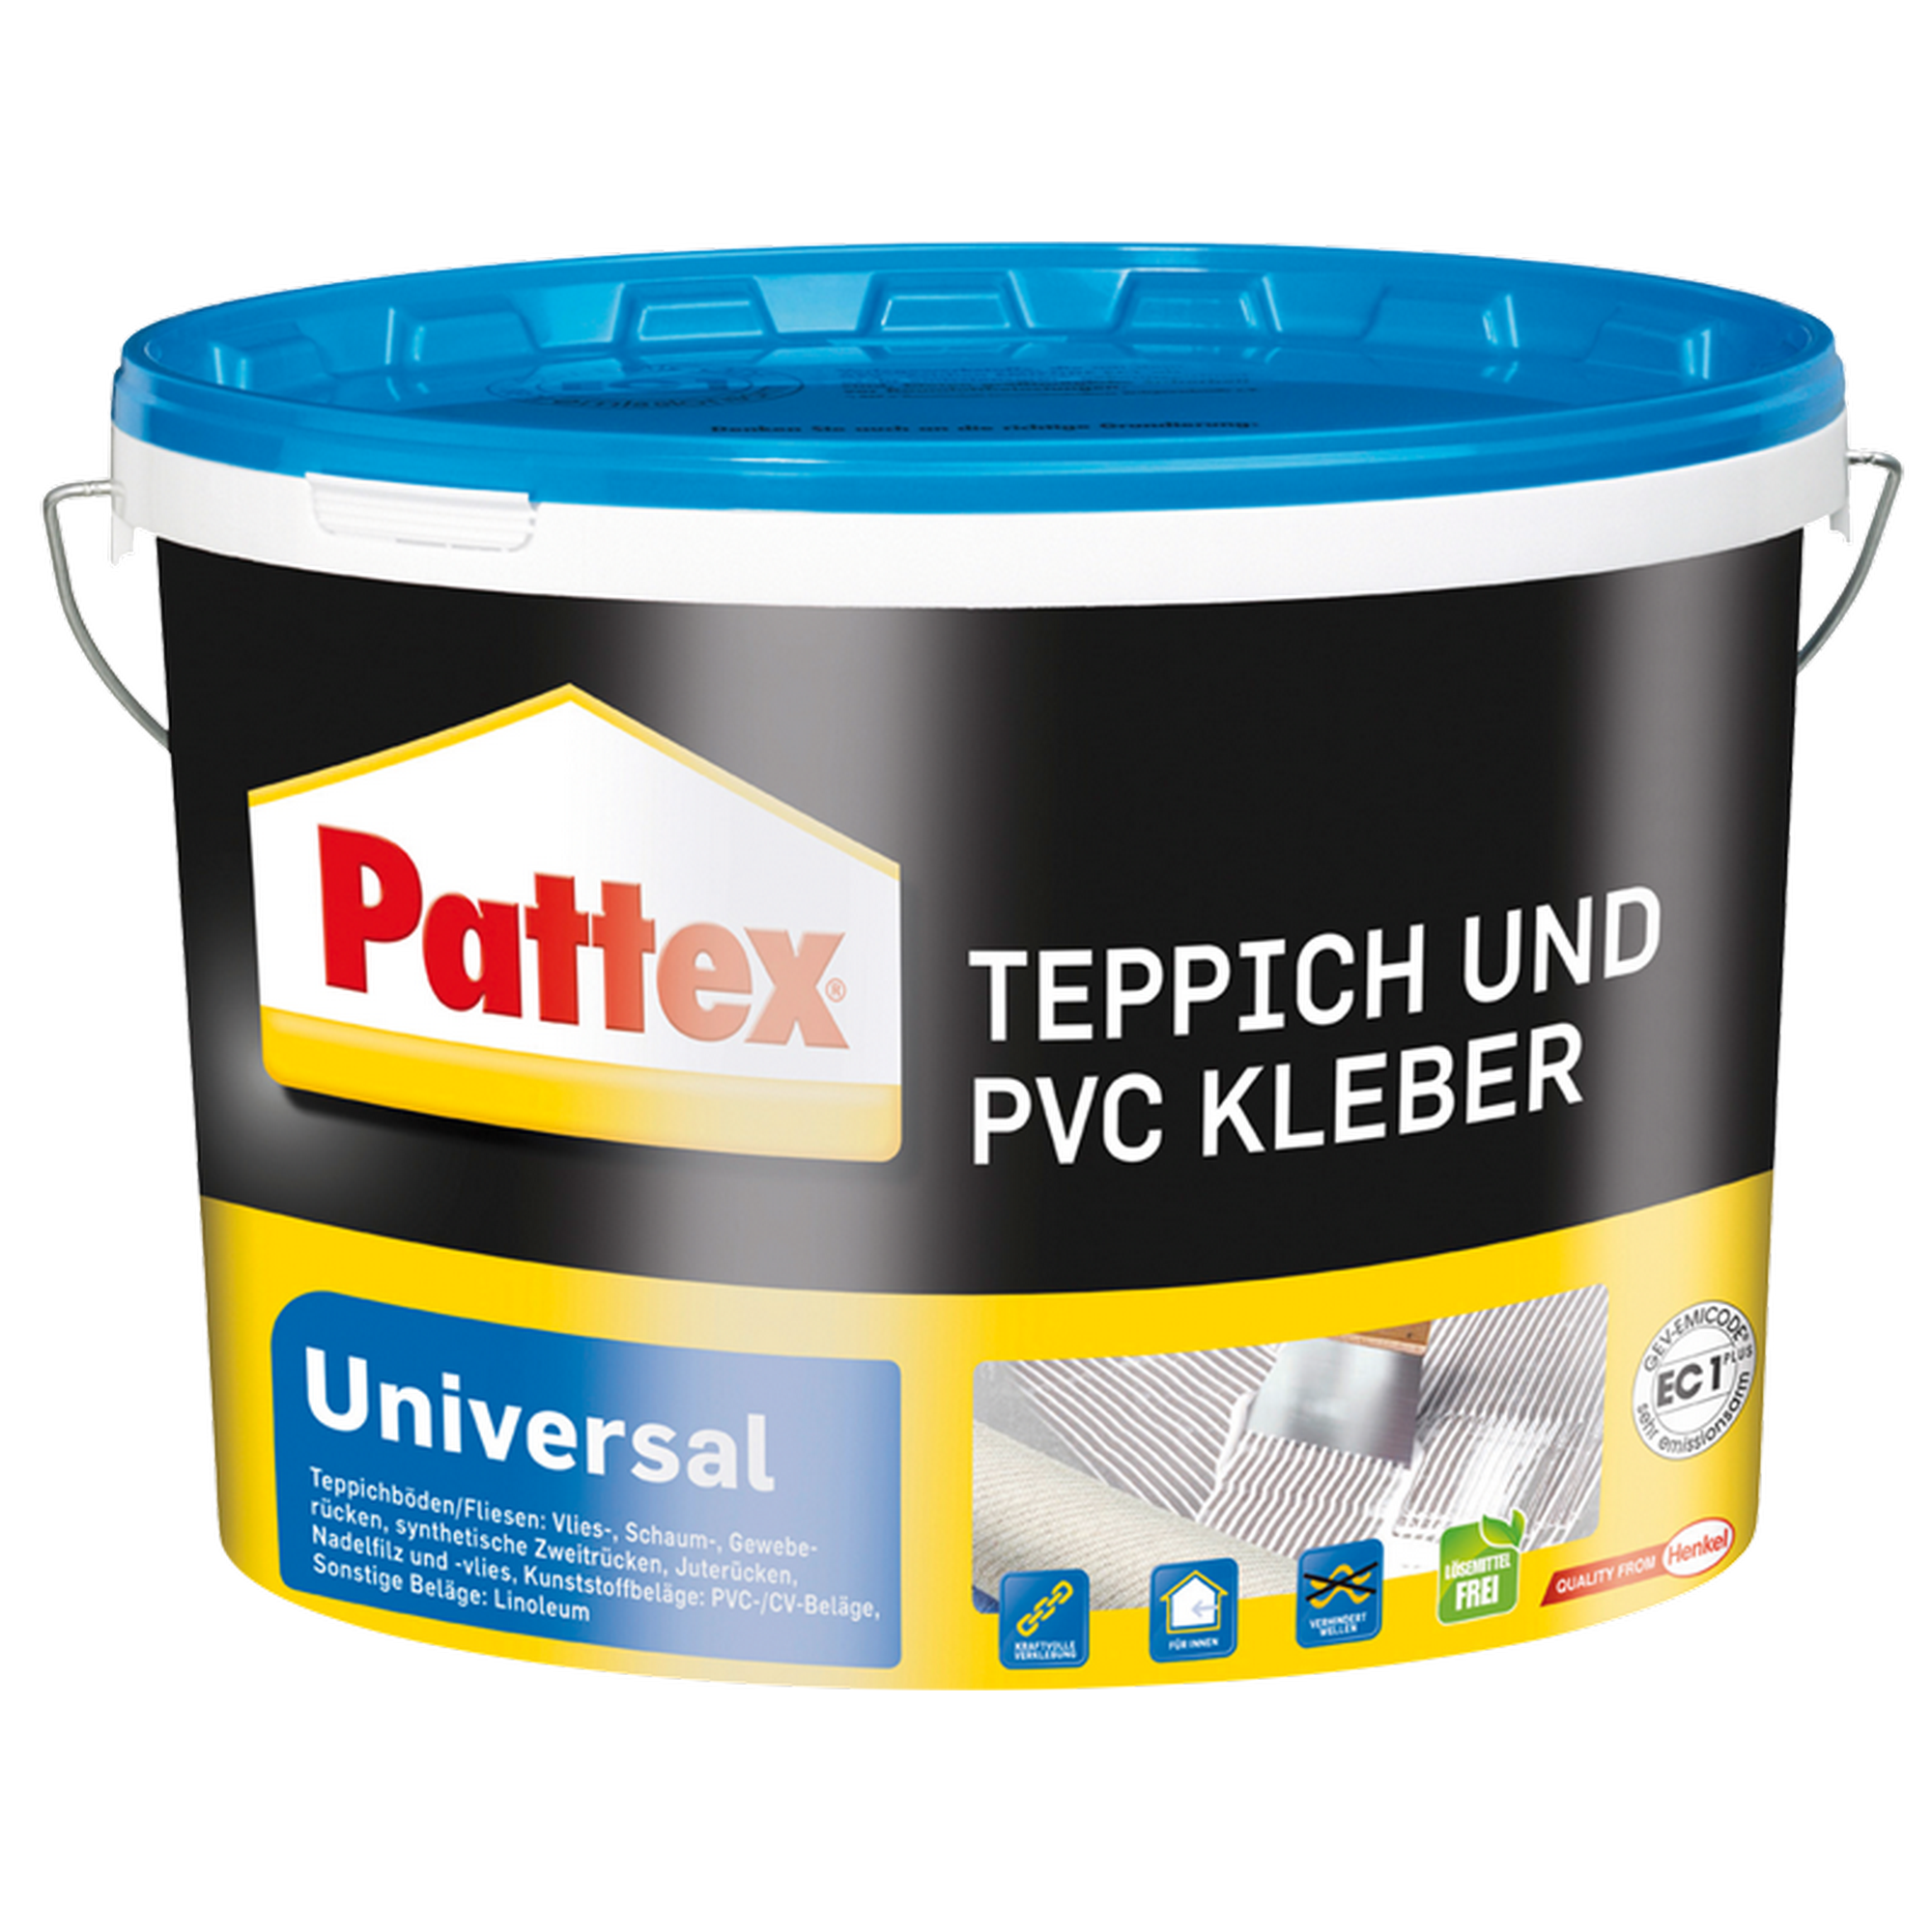 Teppich- und PVC-Kleber 'Universal' weiß 15 kg + product picture